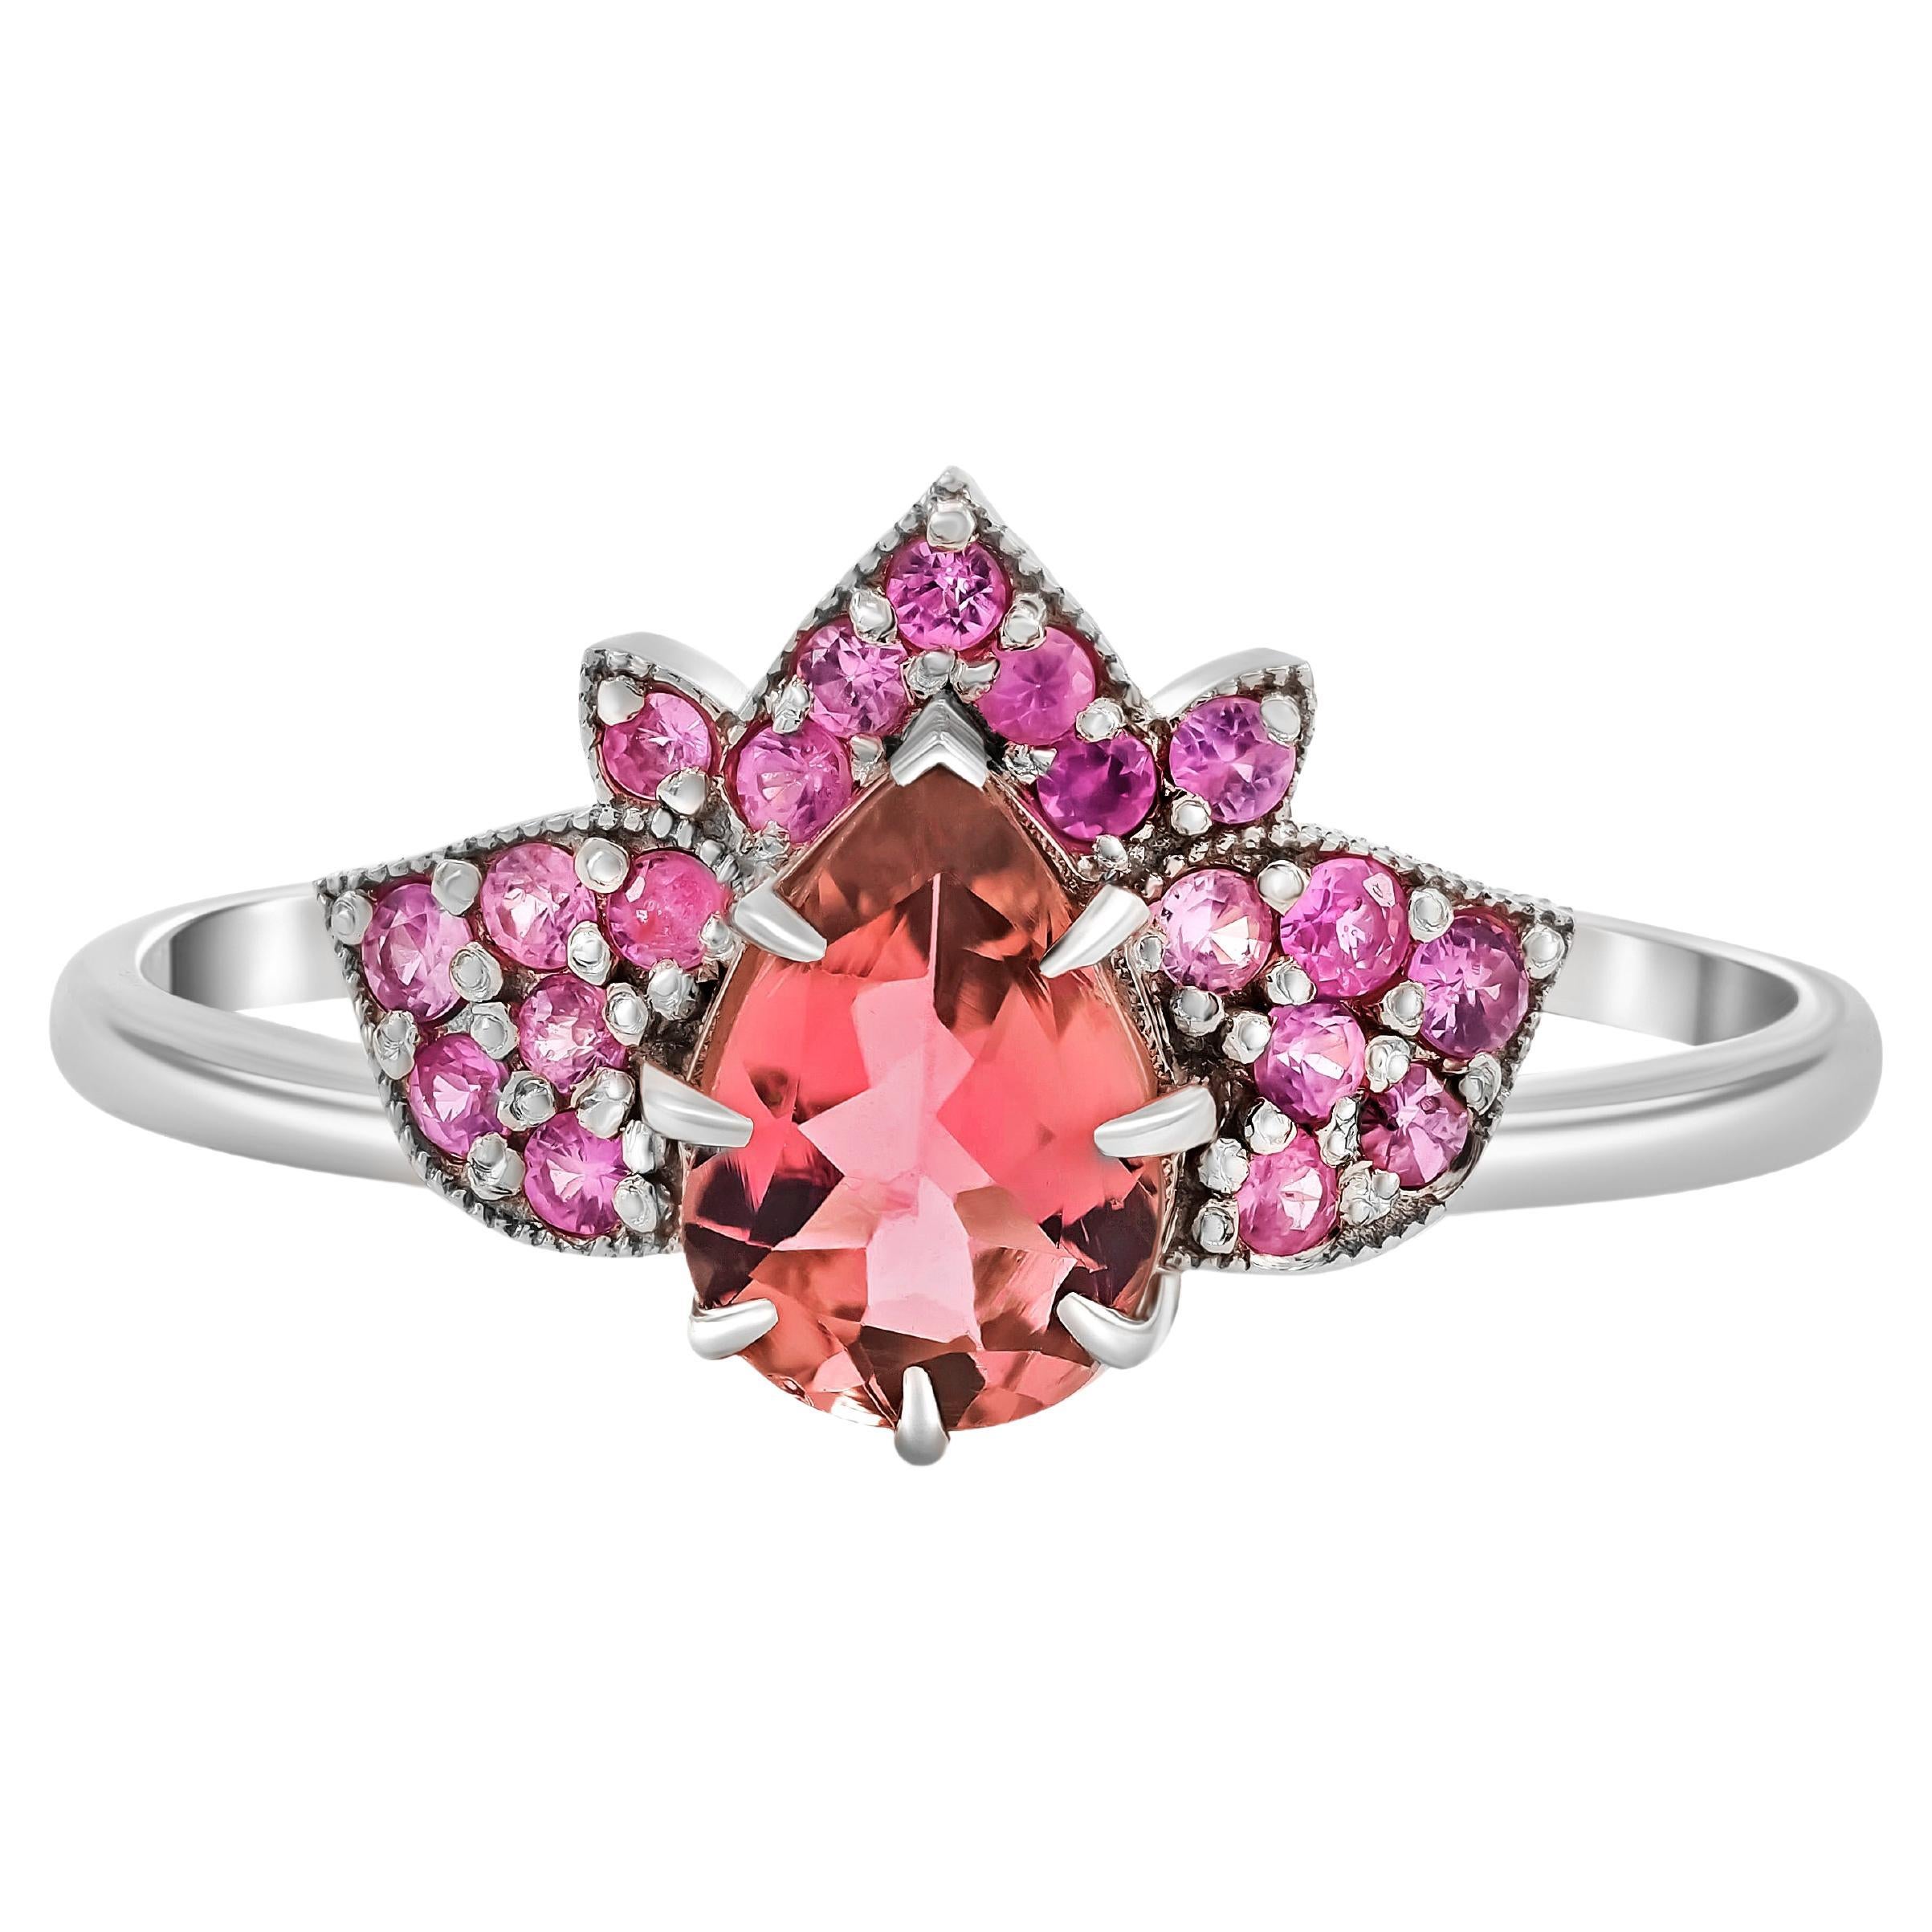 14 karat gold Lotus ring with pink tourmaline and sapphires